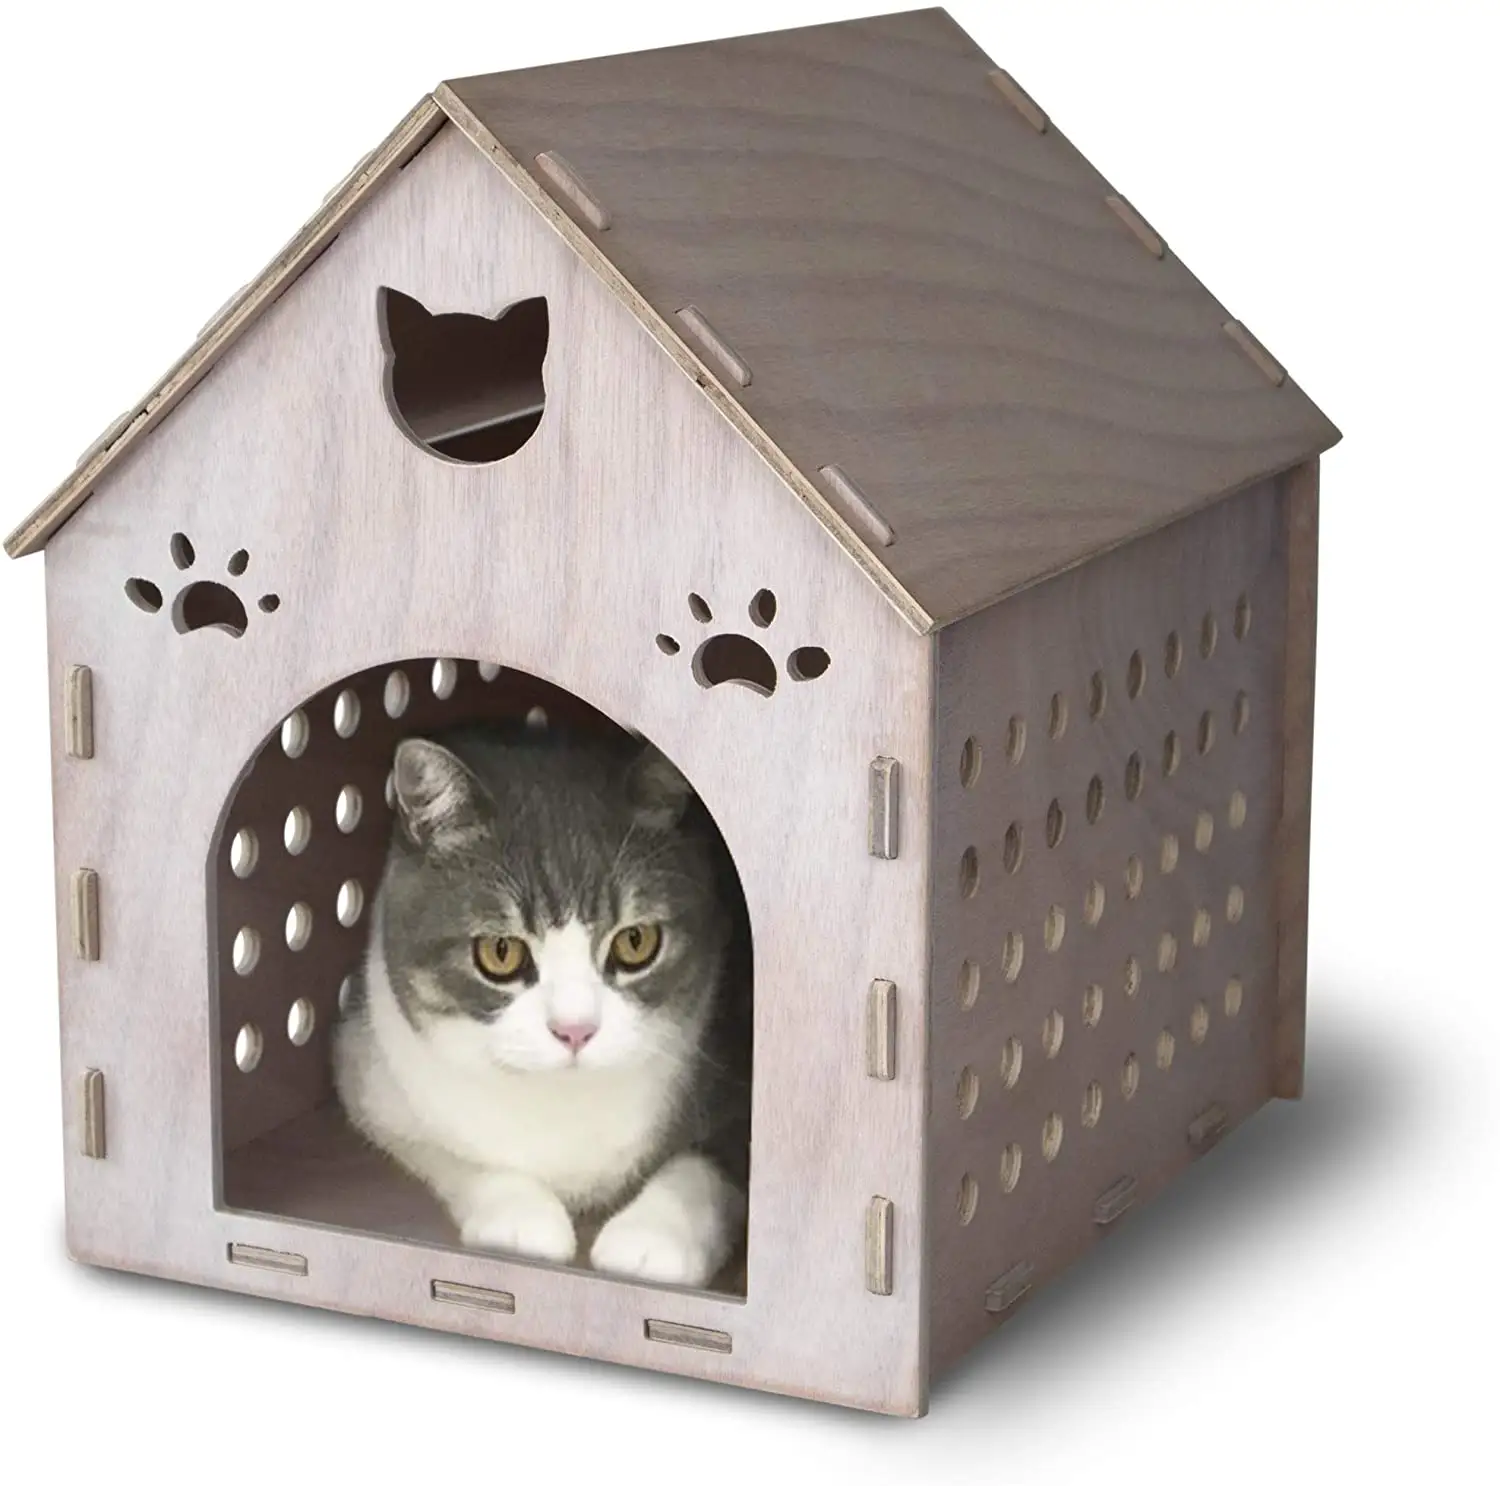 บ้านไม้แมว,ที่พักพิงแมวไม้อัดประกอบเต็มบ้านสำหรับแมวกระต่ายและสุนัขขนาดเล็ก